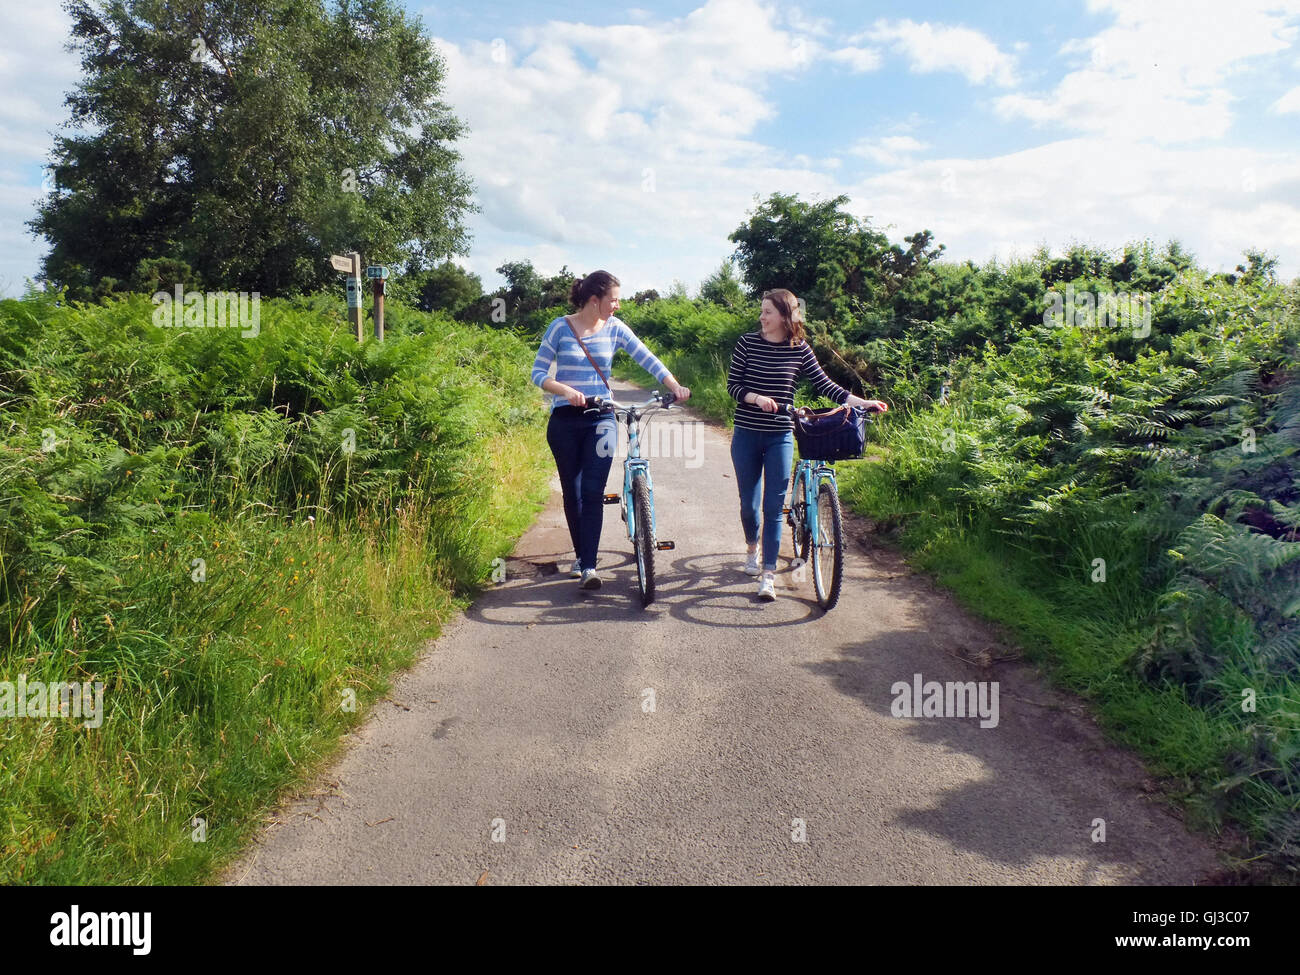 Dos adultos jóvenes empujando las bicicletas a lo largo de Carril del país Foto de stock